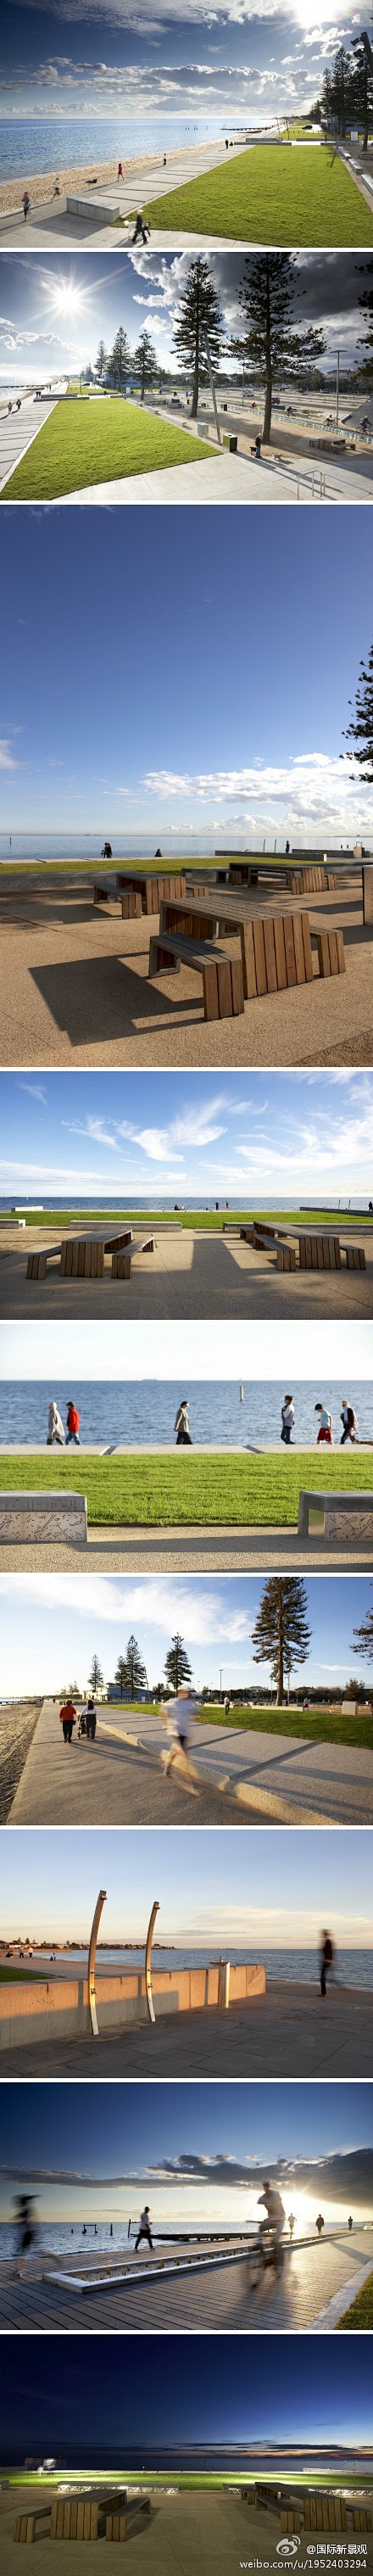 墨尔本Elwood海滩景观设计-----...